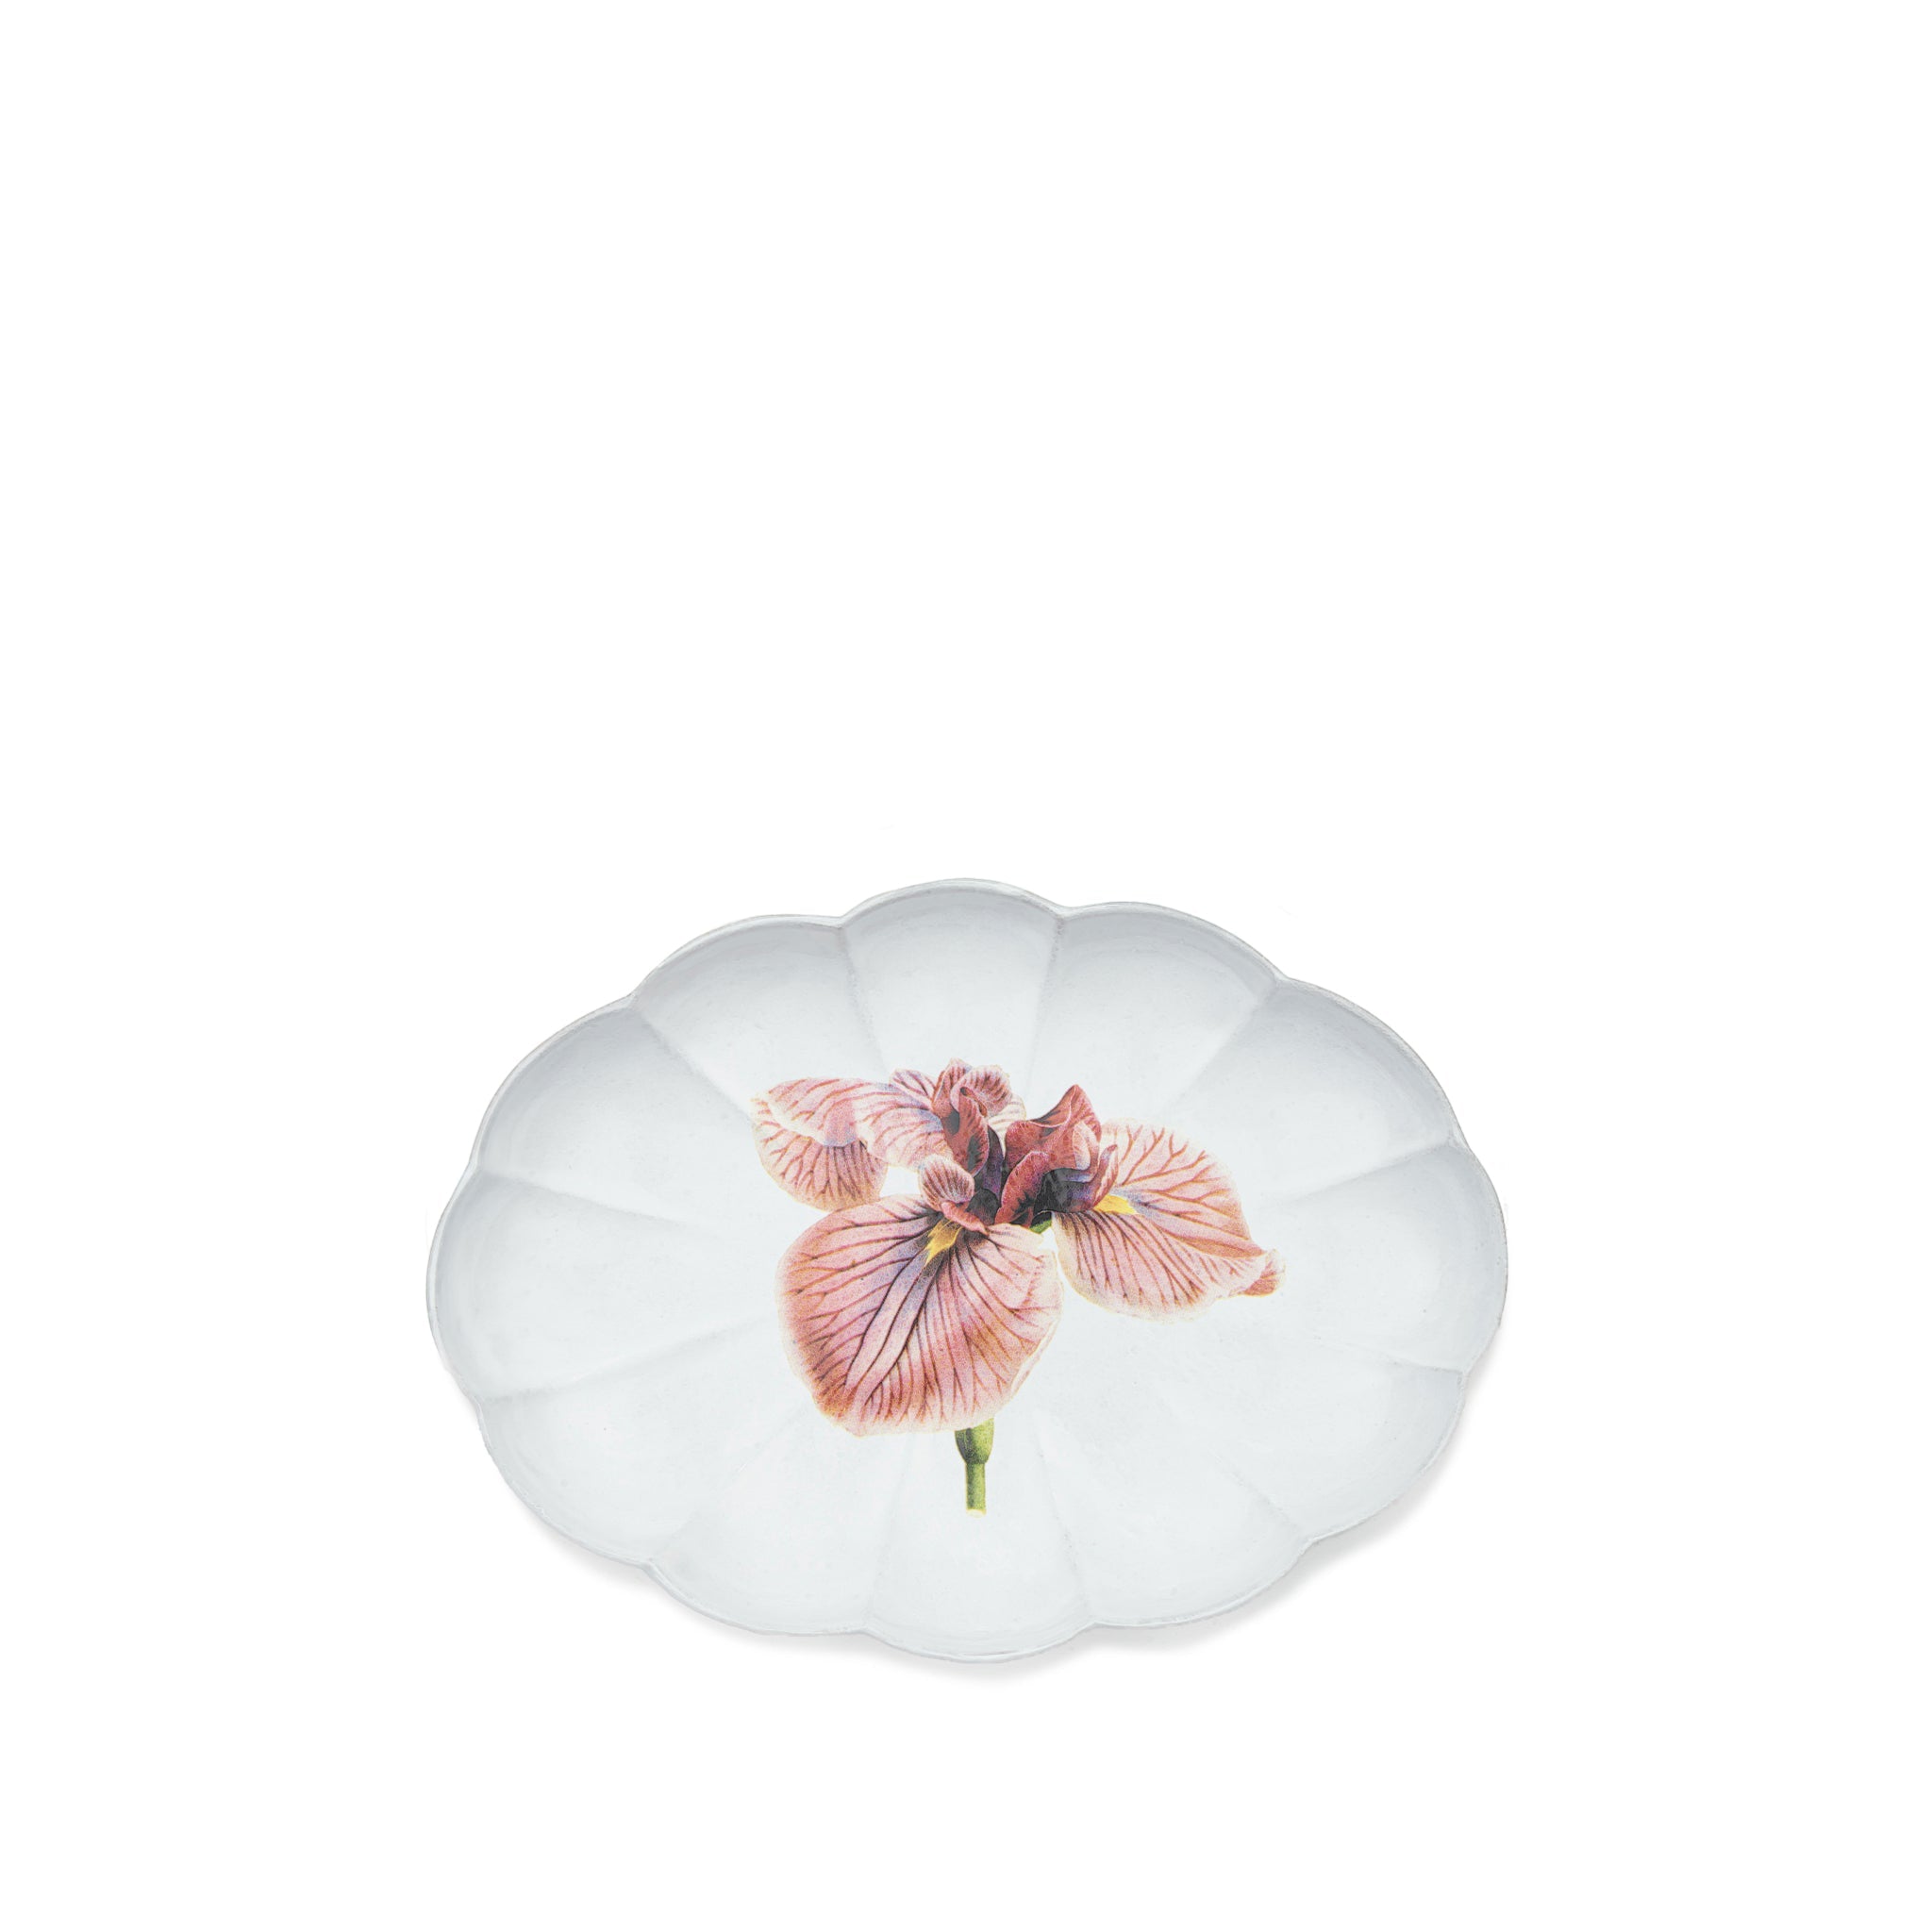 Iris Platter by Astier de Villatte, 29cm